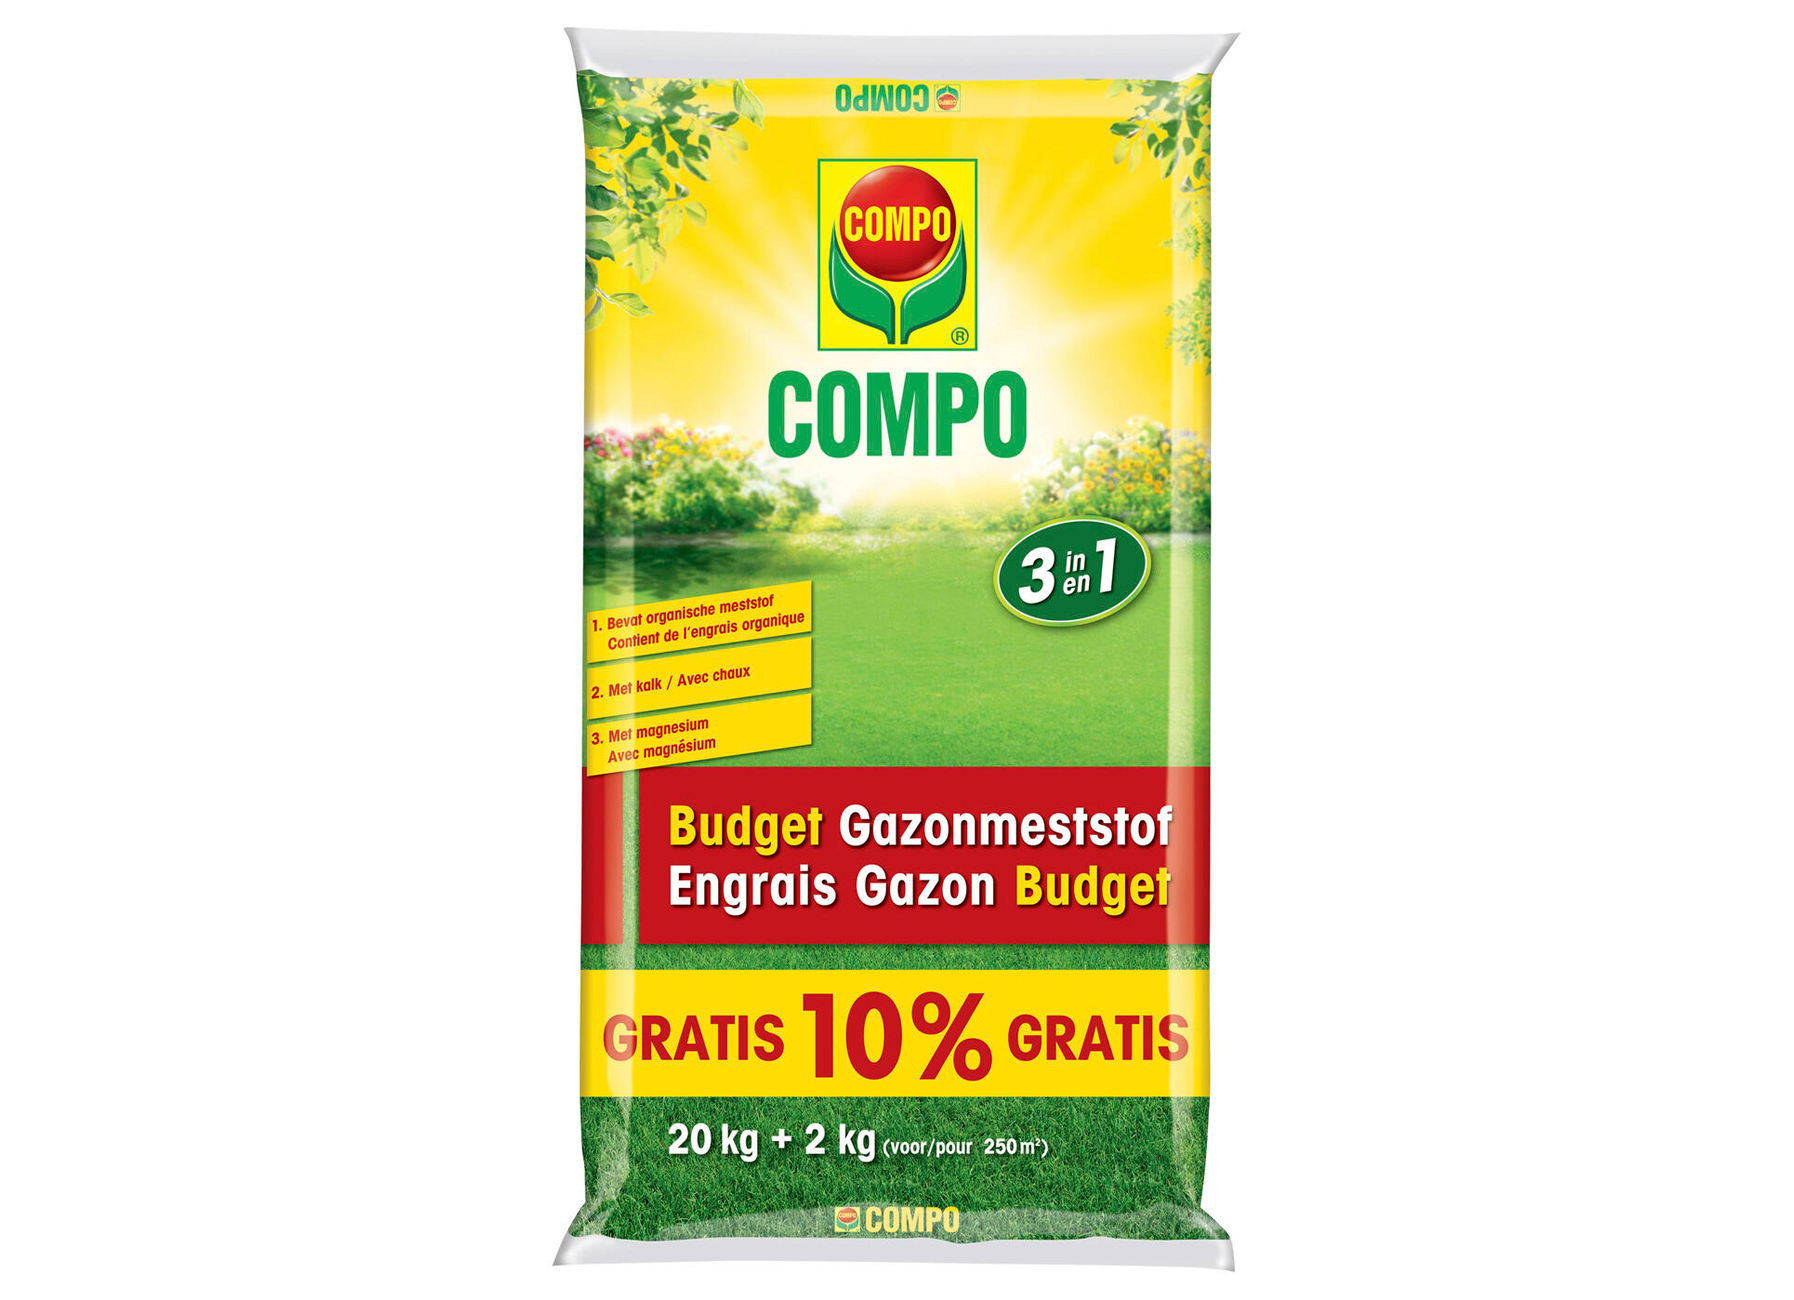 COMPO ENGRAIS GAZON BUDGET 20kg + 10%